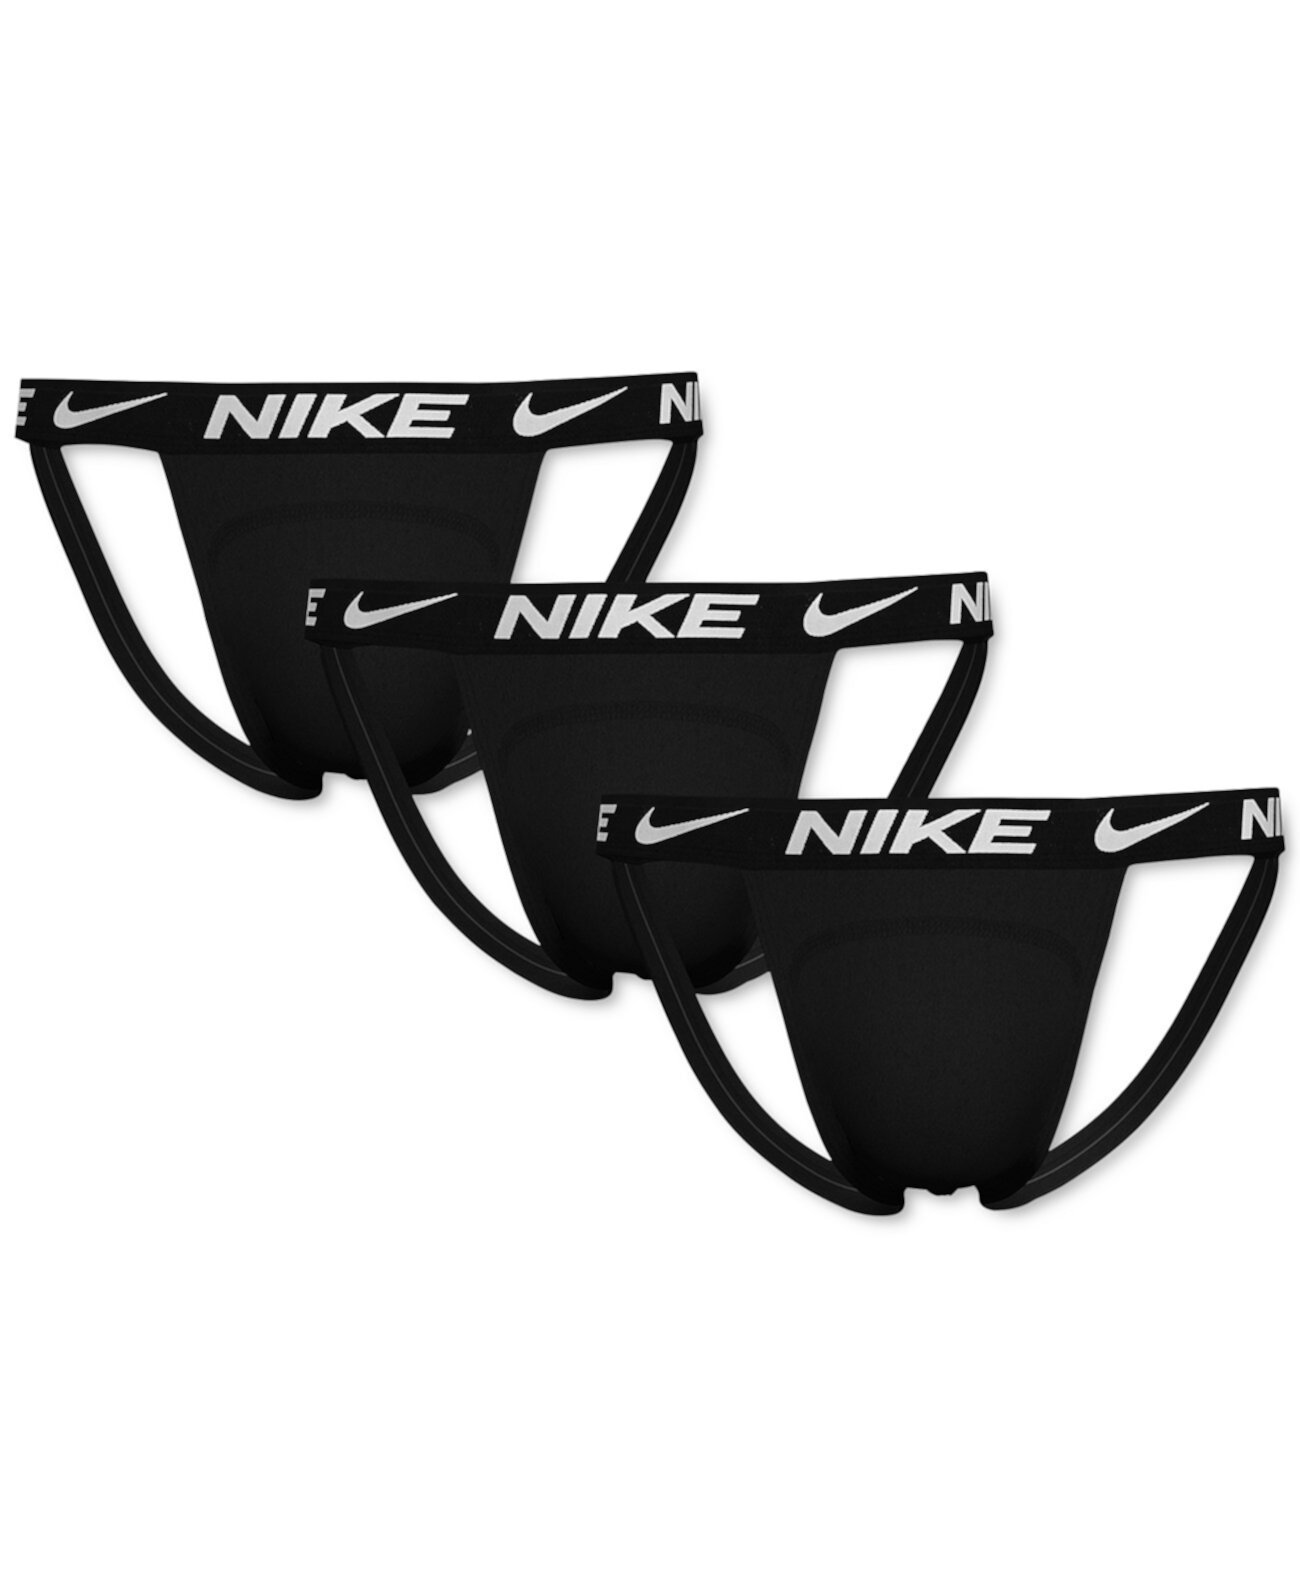 Мужские ремни Essential Dri-FIT Micro Jock из 3 комплектов Nike